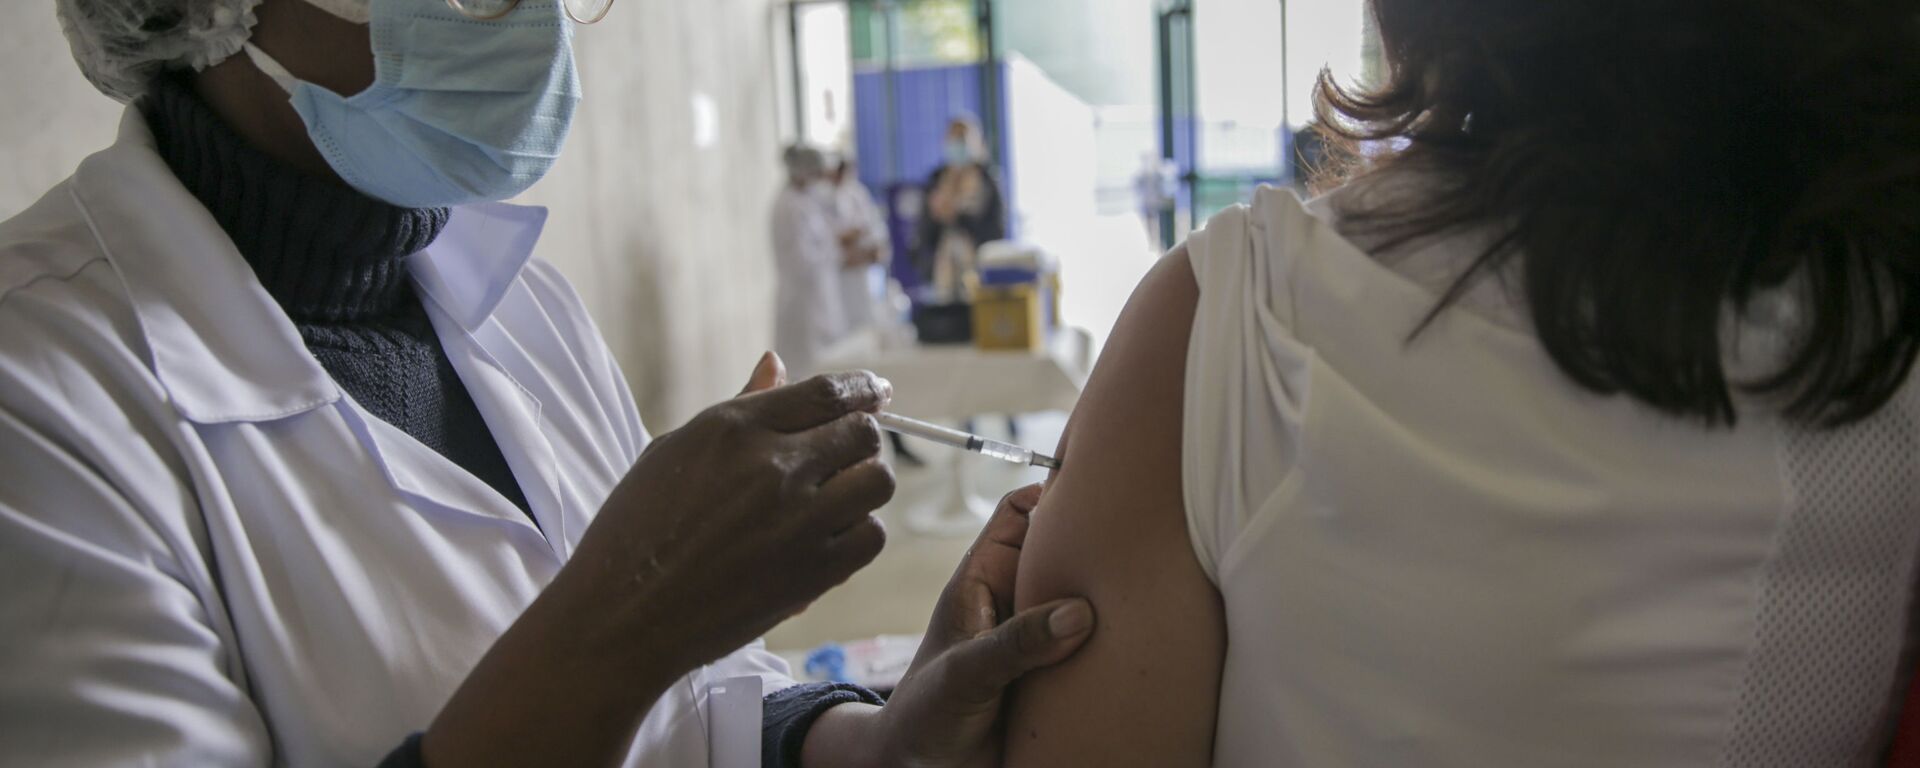 Imunização contra a COVID-19 com a vacina da Pfizer em São Paulo, 17 de maio de 2021 - Sputnik Brasil, 1920, 25.11.2021